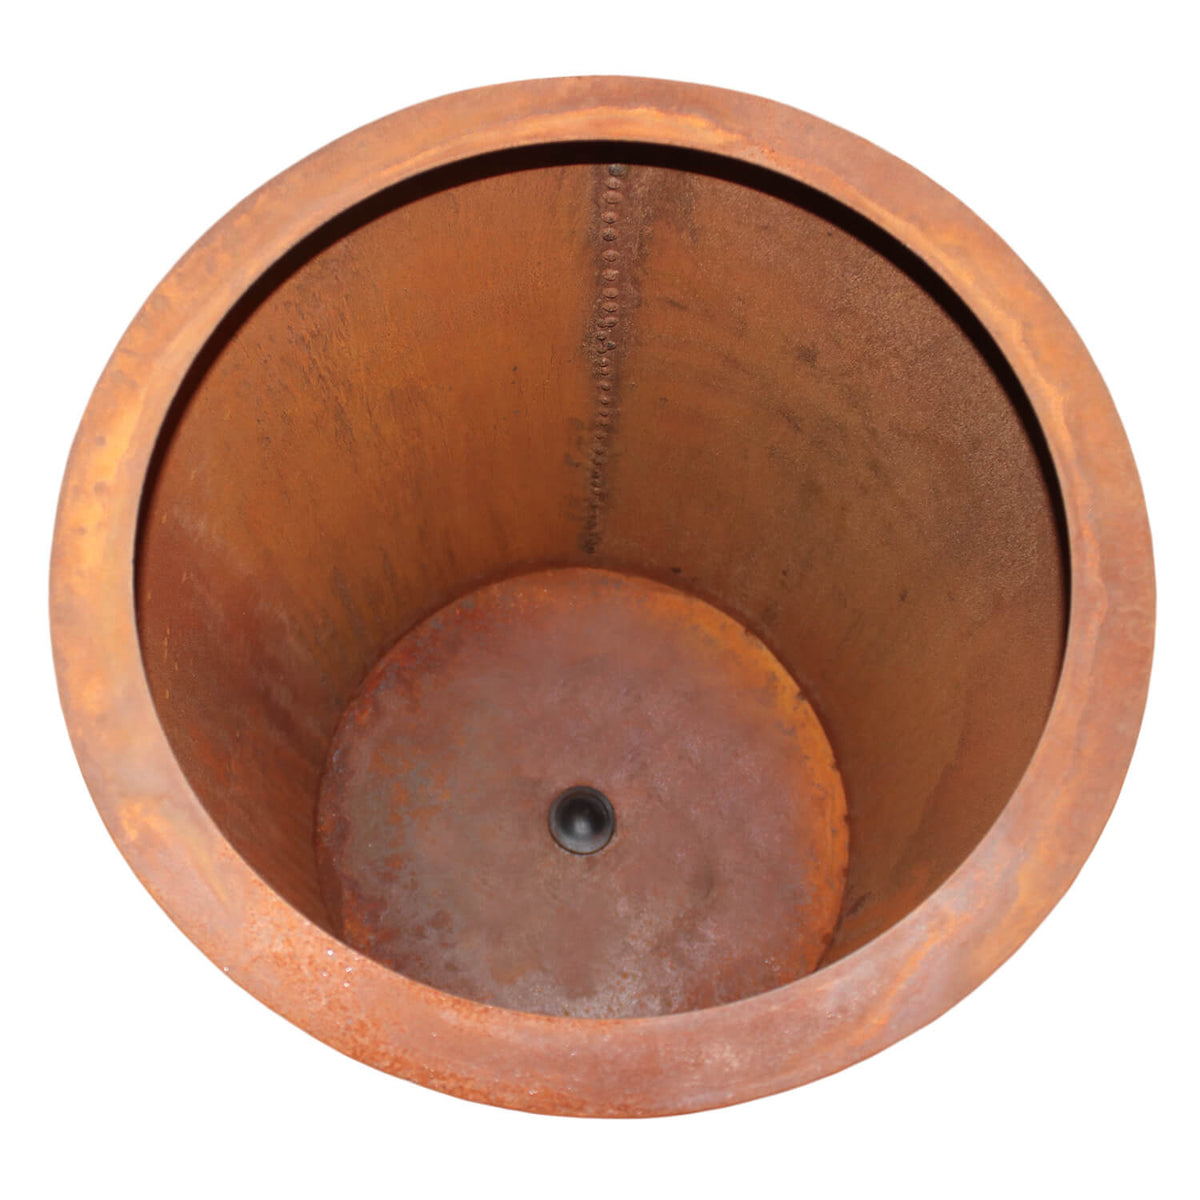 inside of corten steel garden pot